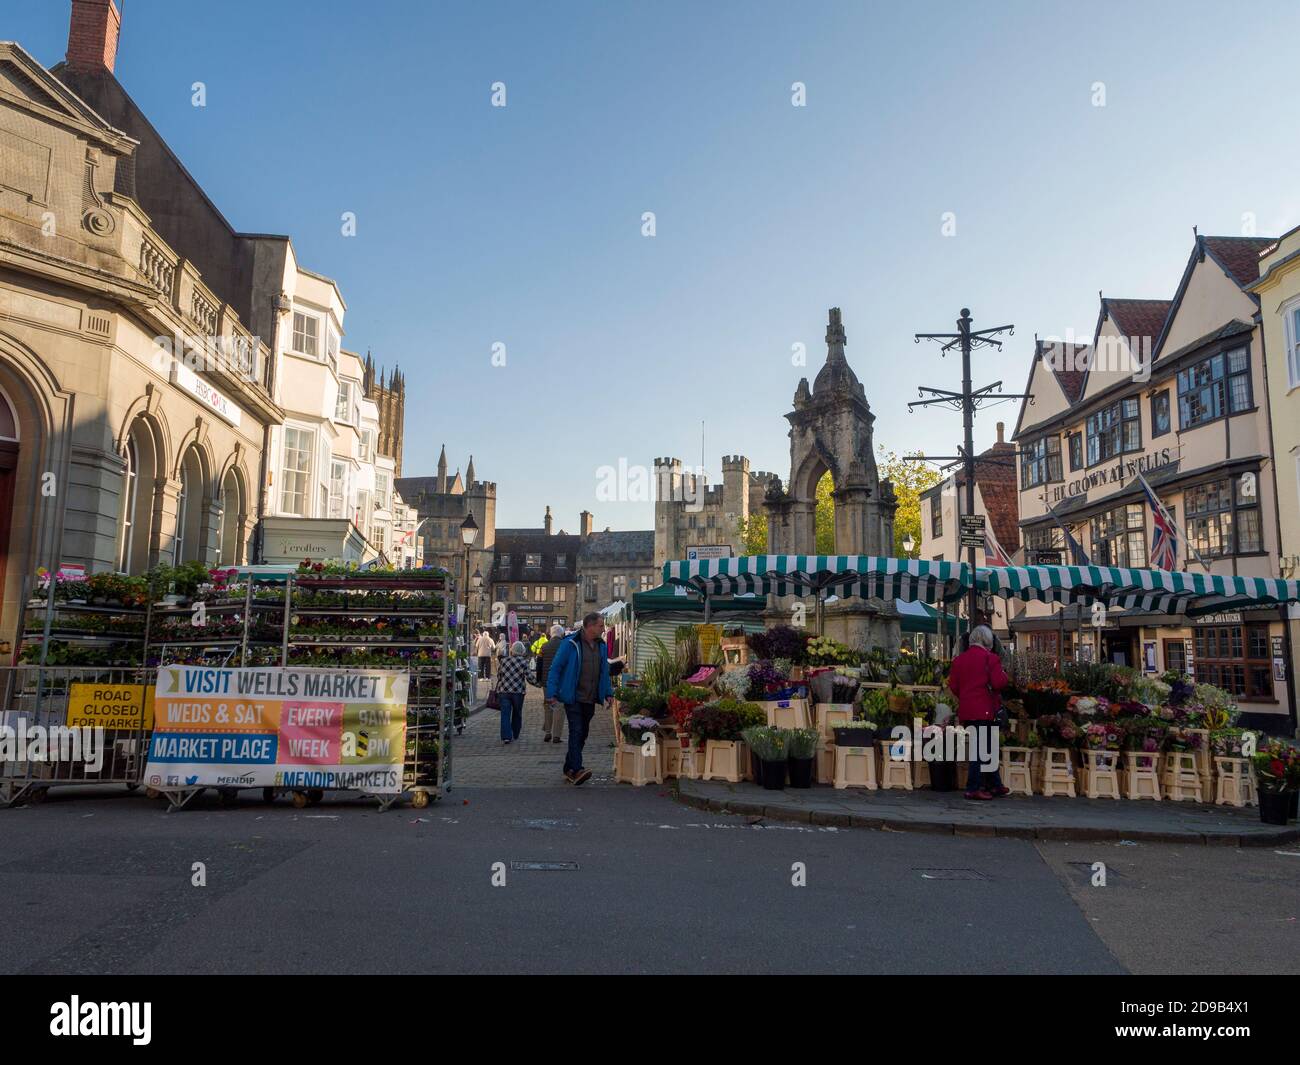 Der zweiwöchige Markt findet am Market Place in der Stadt Wells, Somerset, England statt. Stockfoto